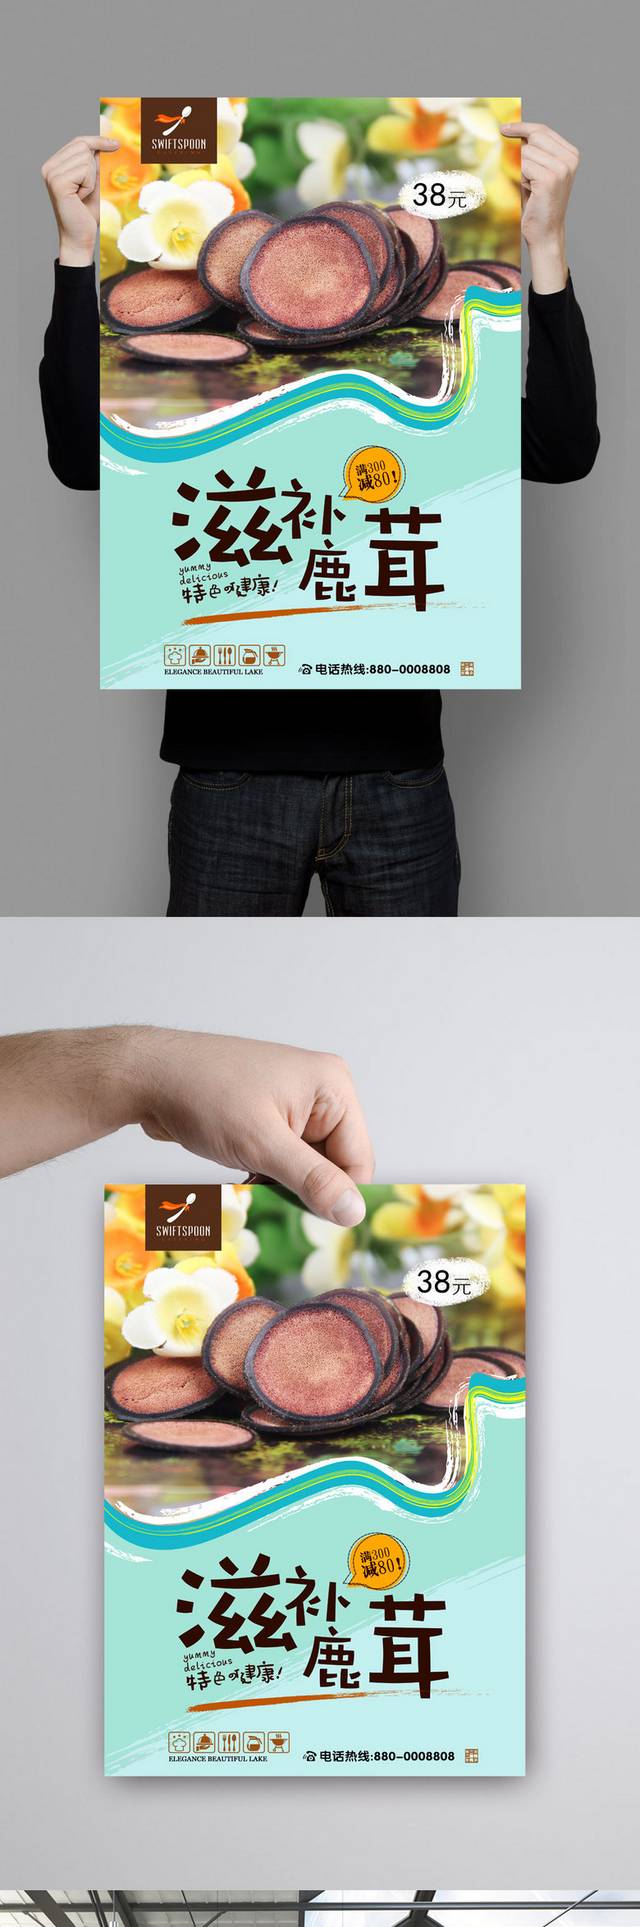 高清鹿茸保健品宣传海报设计